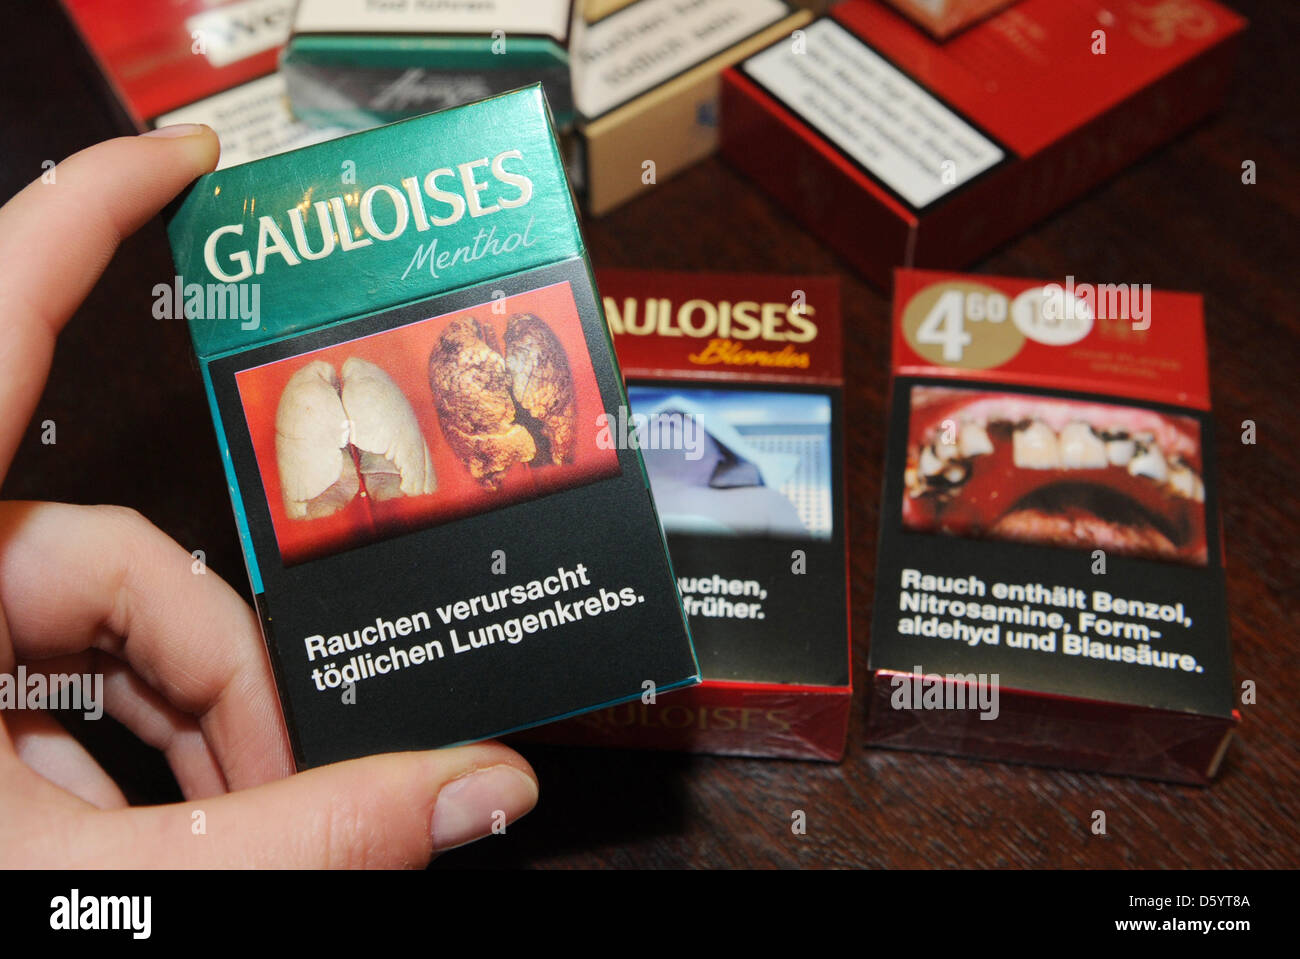 Les paquets de cigarettes de différentes marques de cigarettes de tabac Reemtsma afficher les photos de maladies causées par le tabagisme sur une table à Hambourg, Allemagne, 30 octobre 2012. Photo : Angelika Warmuth Banque D'Images